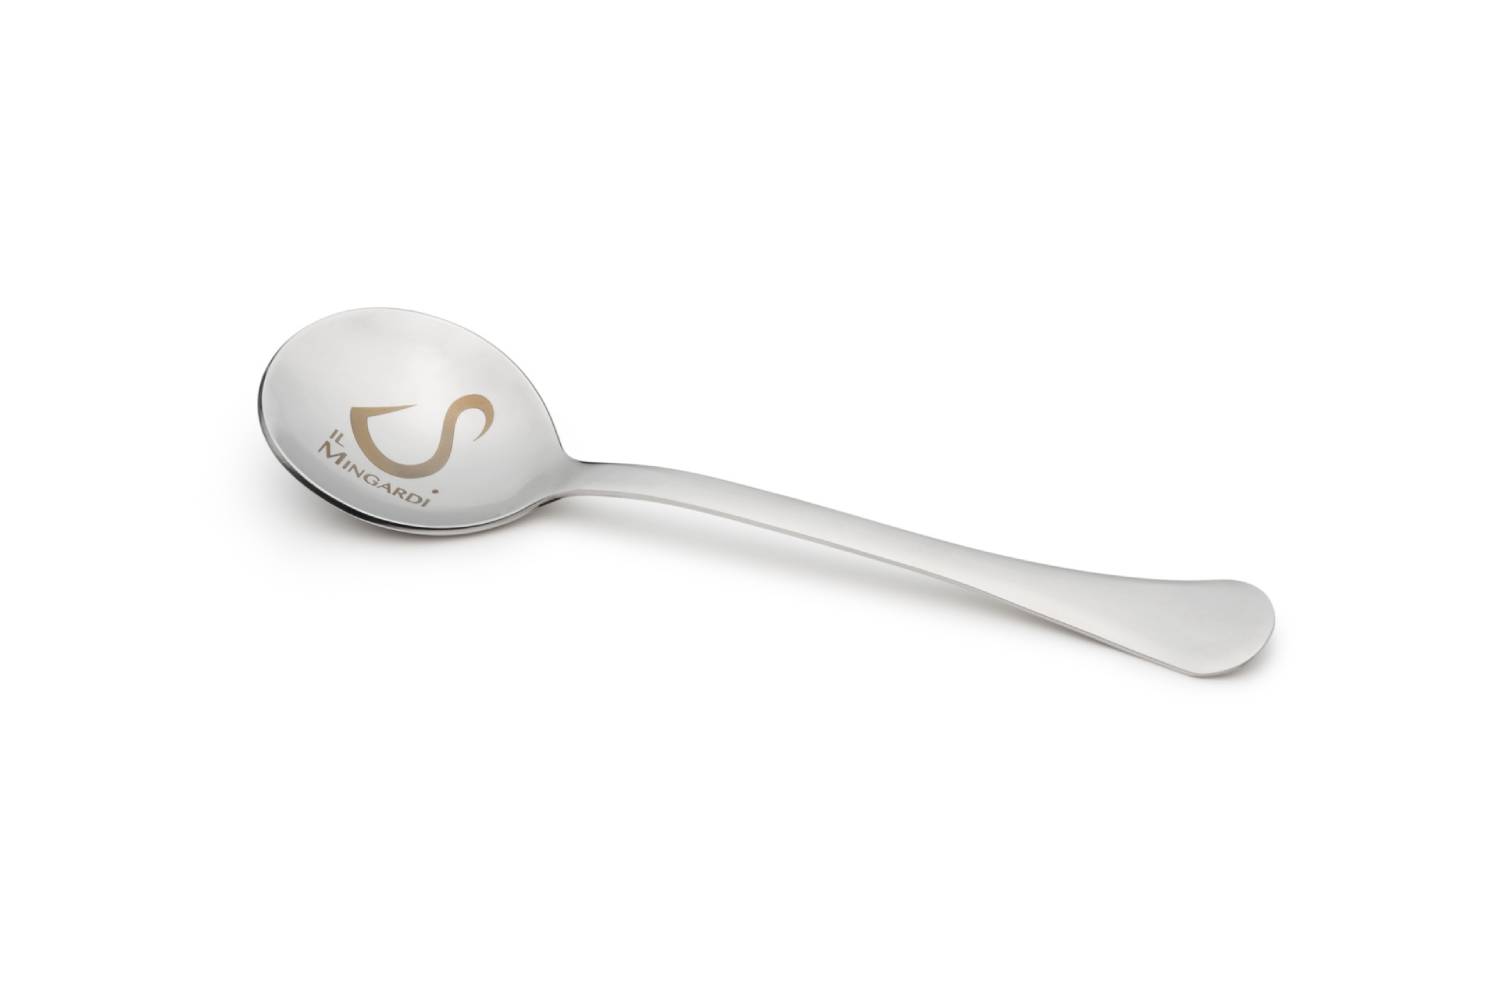 Tasting spoon Il Mingardi S